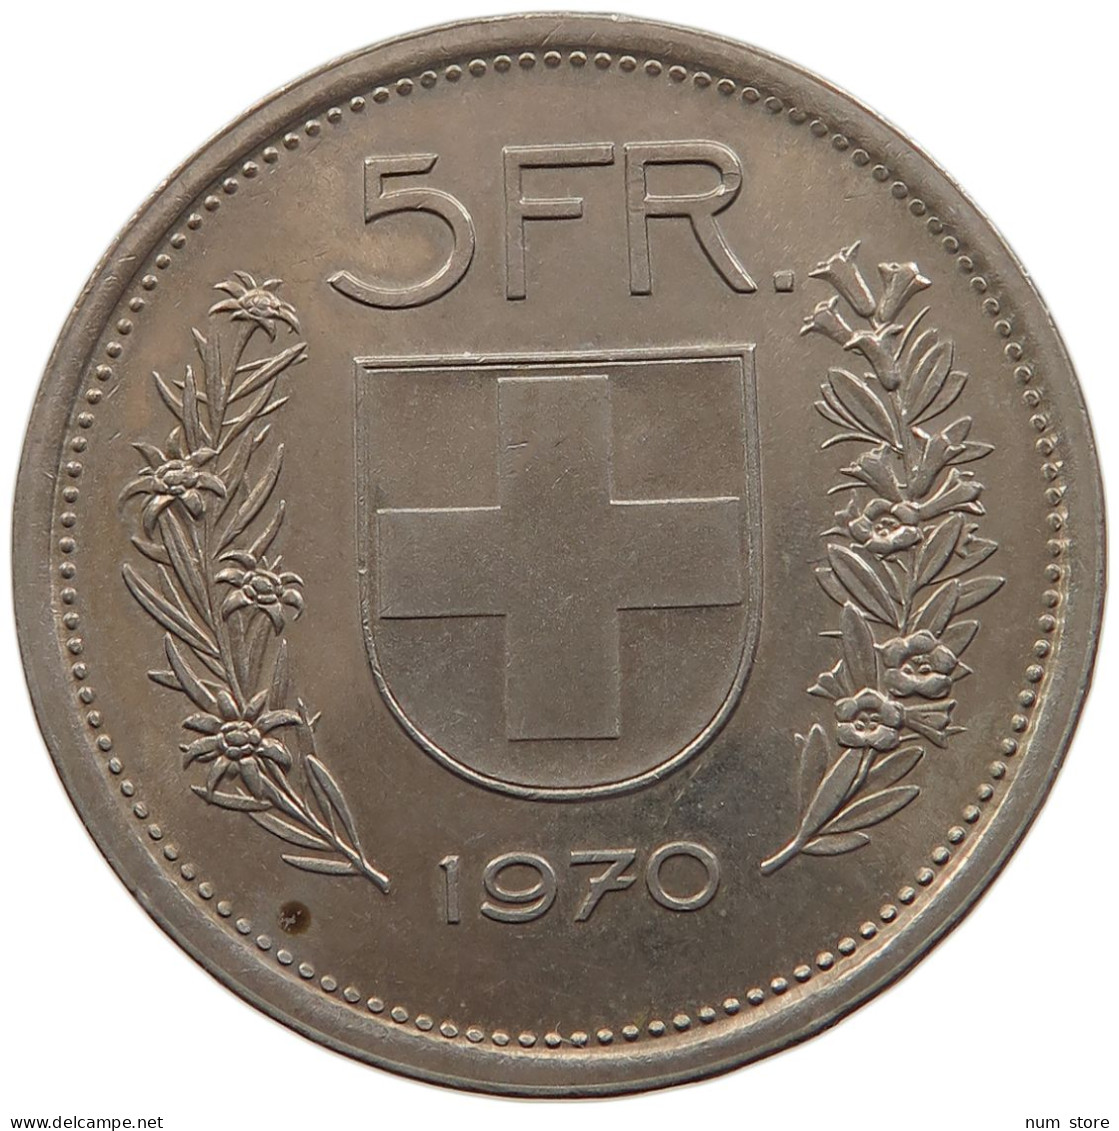 SWITZERLAND 5 FRANCS 1970 #s105 0017 - 5 Francs